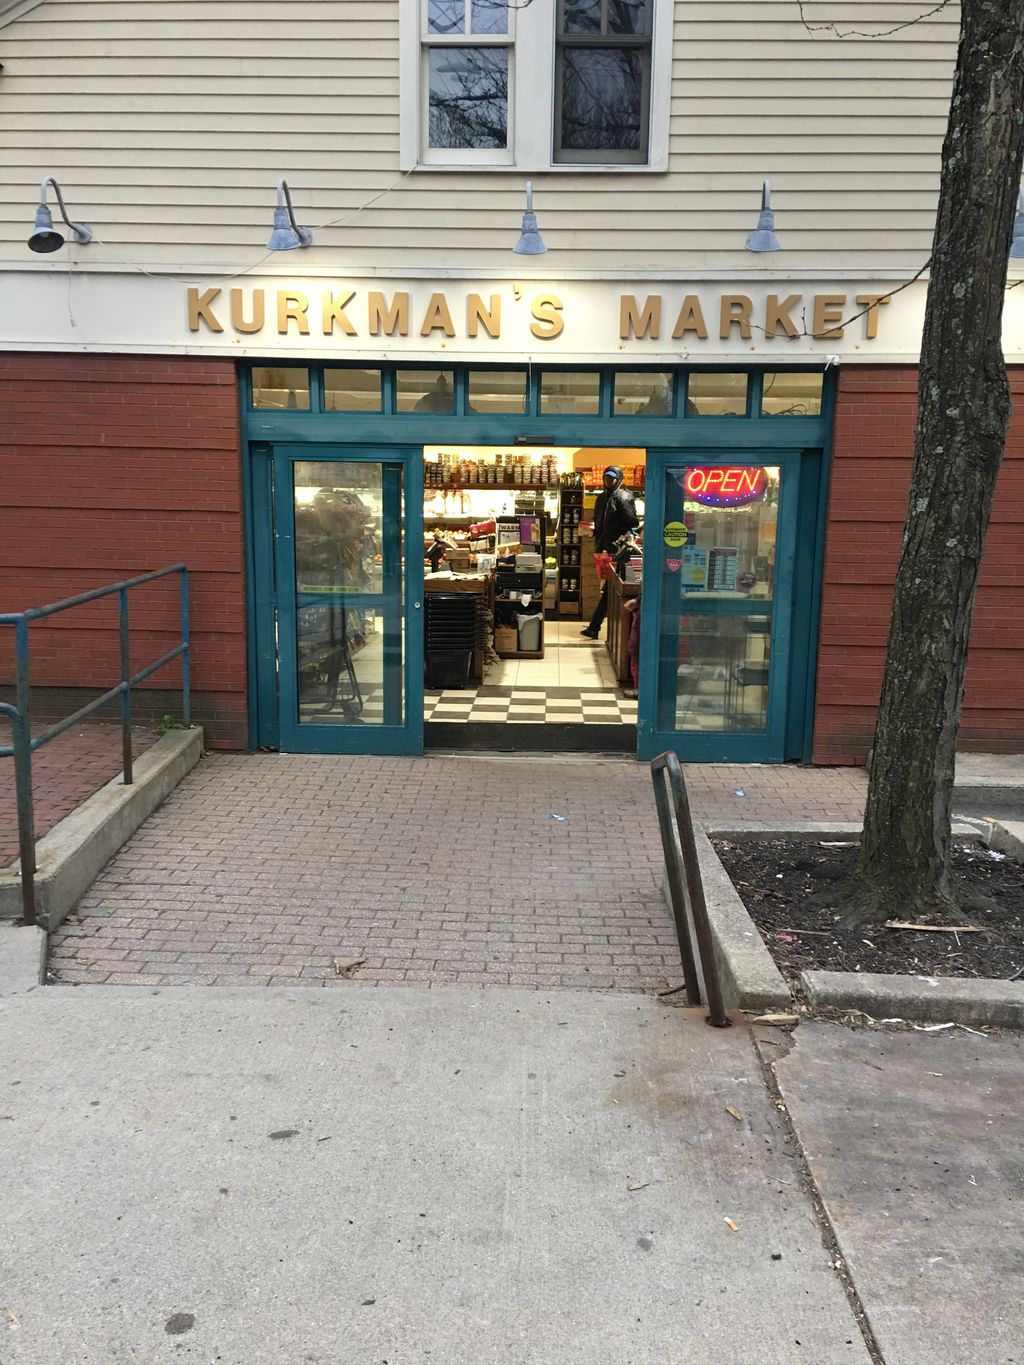 Kurkmans-Market-Co-1